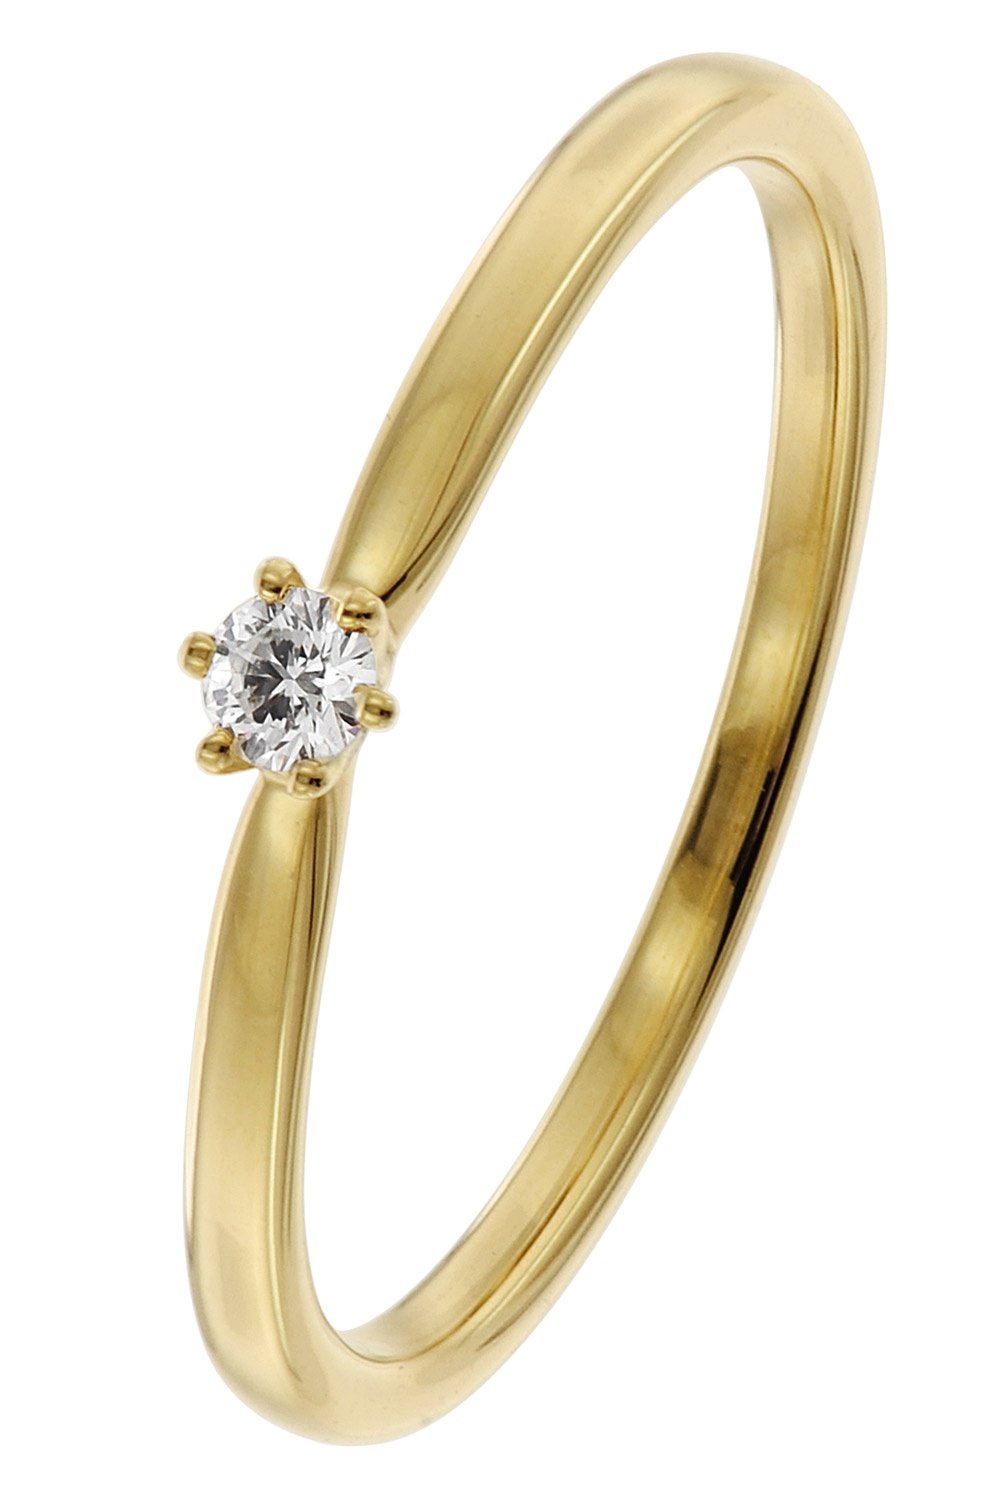 trendor 26932.005GG Diamant-Ring Gelbgold 585/14 Kt. Brillant 0,05 ct